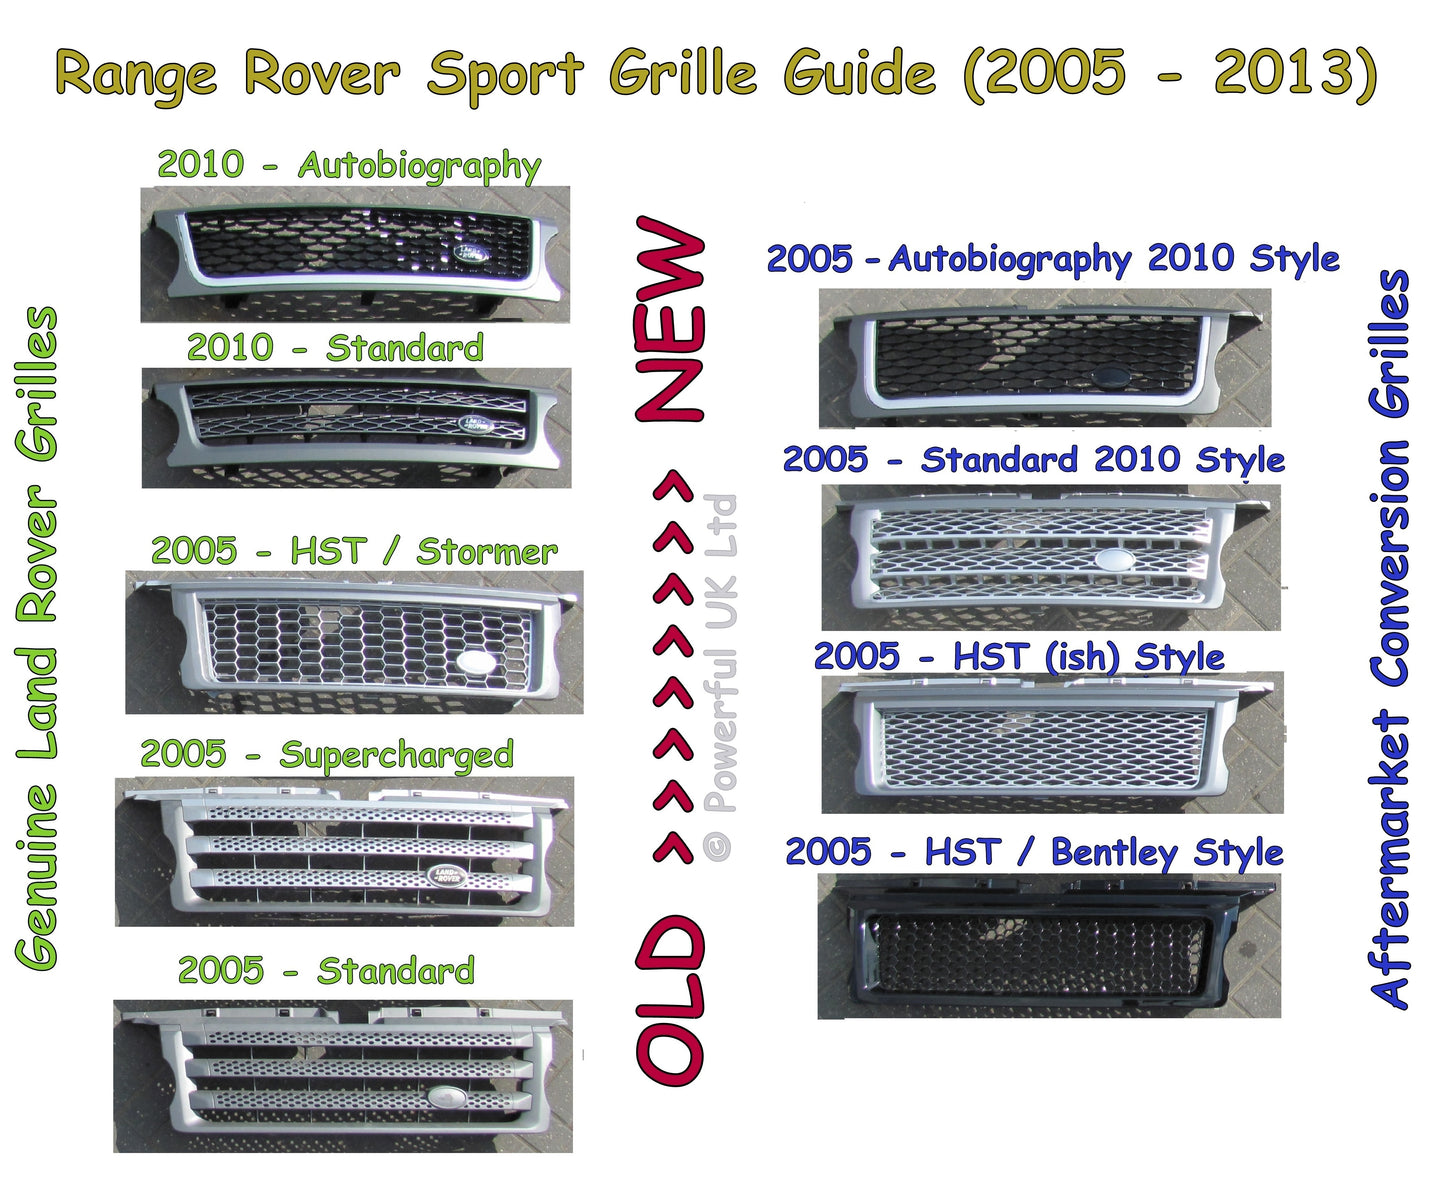 Front Grille - Black/Chrome/Chrome for Range Rover Sport 05-09